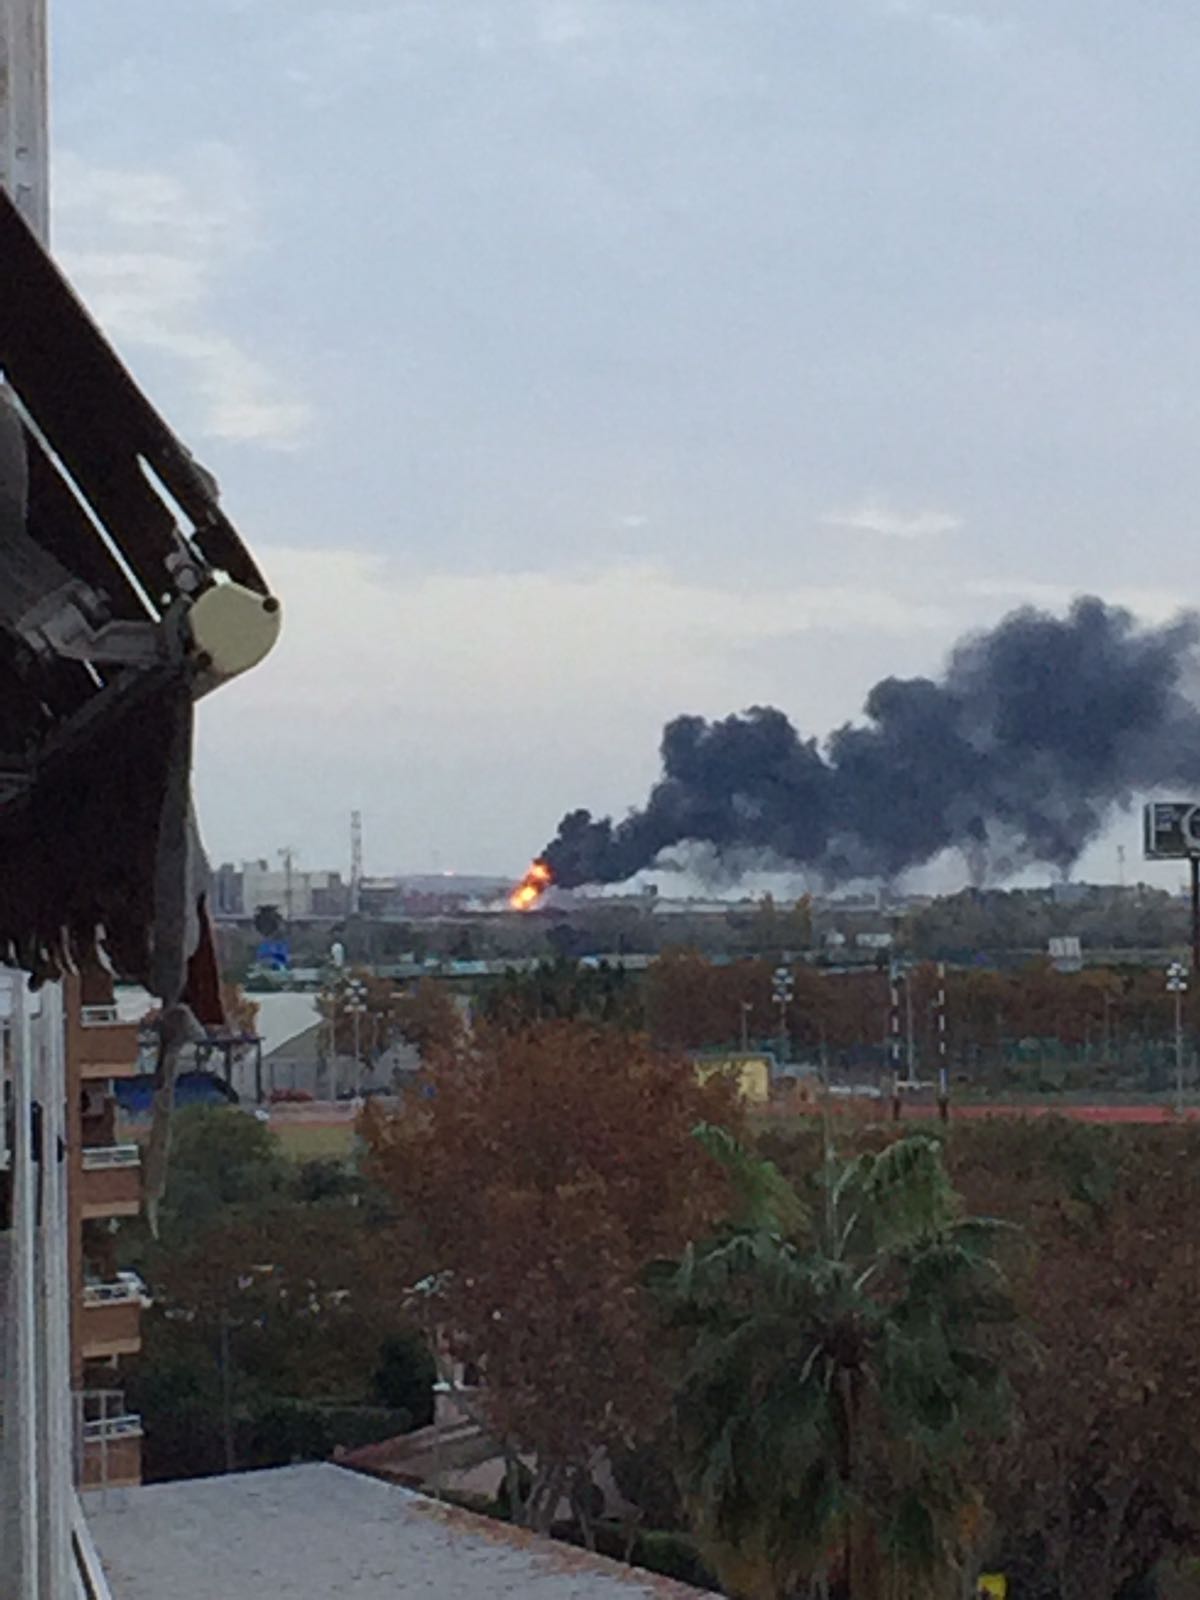  SUCCESSOS: Espectacular incendi a La Seda del Prat de Llobregat